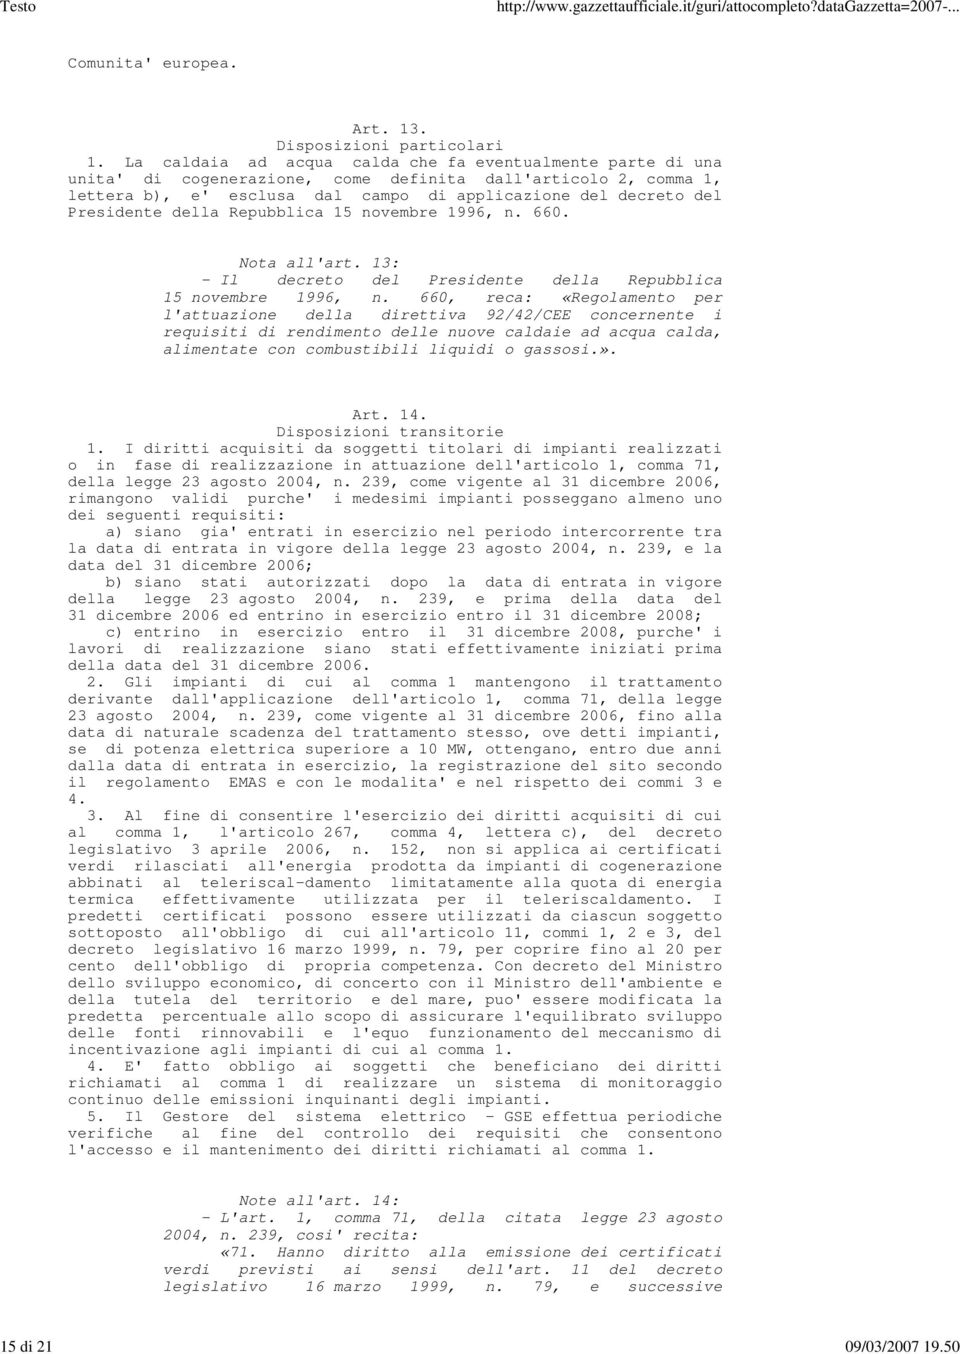 Presidente della Repubblica 15 novembre 1996, n. 660. Nota all'art. 13: - Il decreto del Presidente della Repubblica 15 novembre 1996, n.